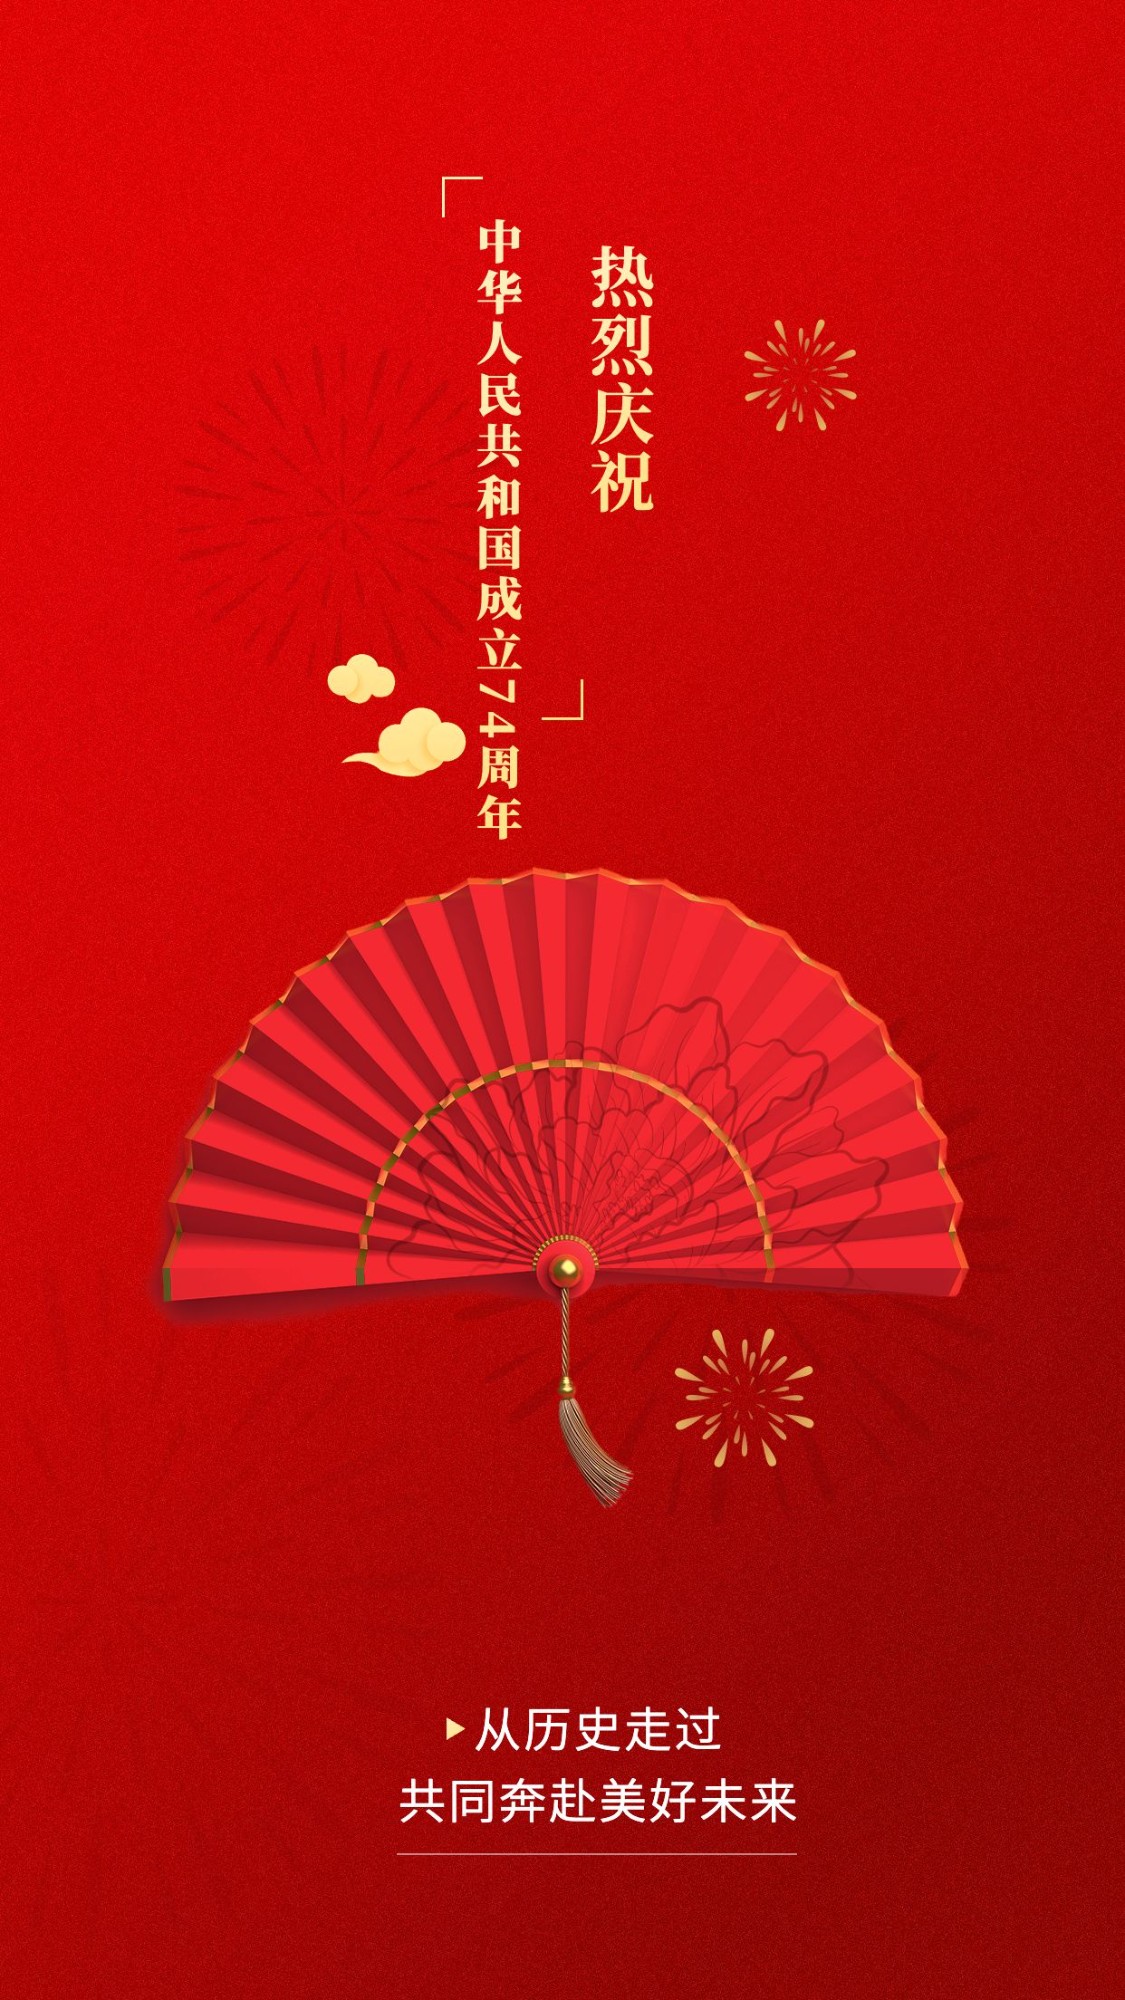 庆祝中国红国庆祝福排版海报预览效果